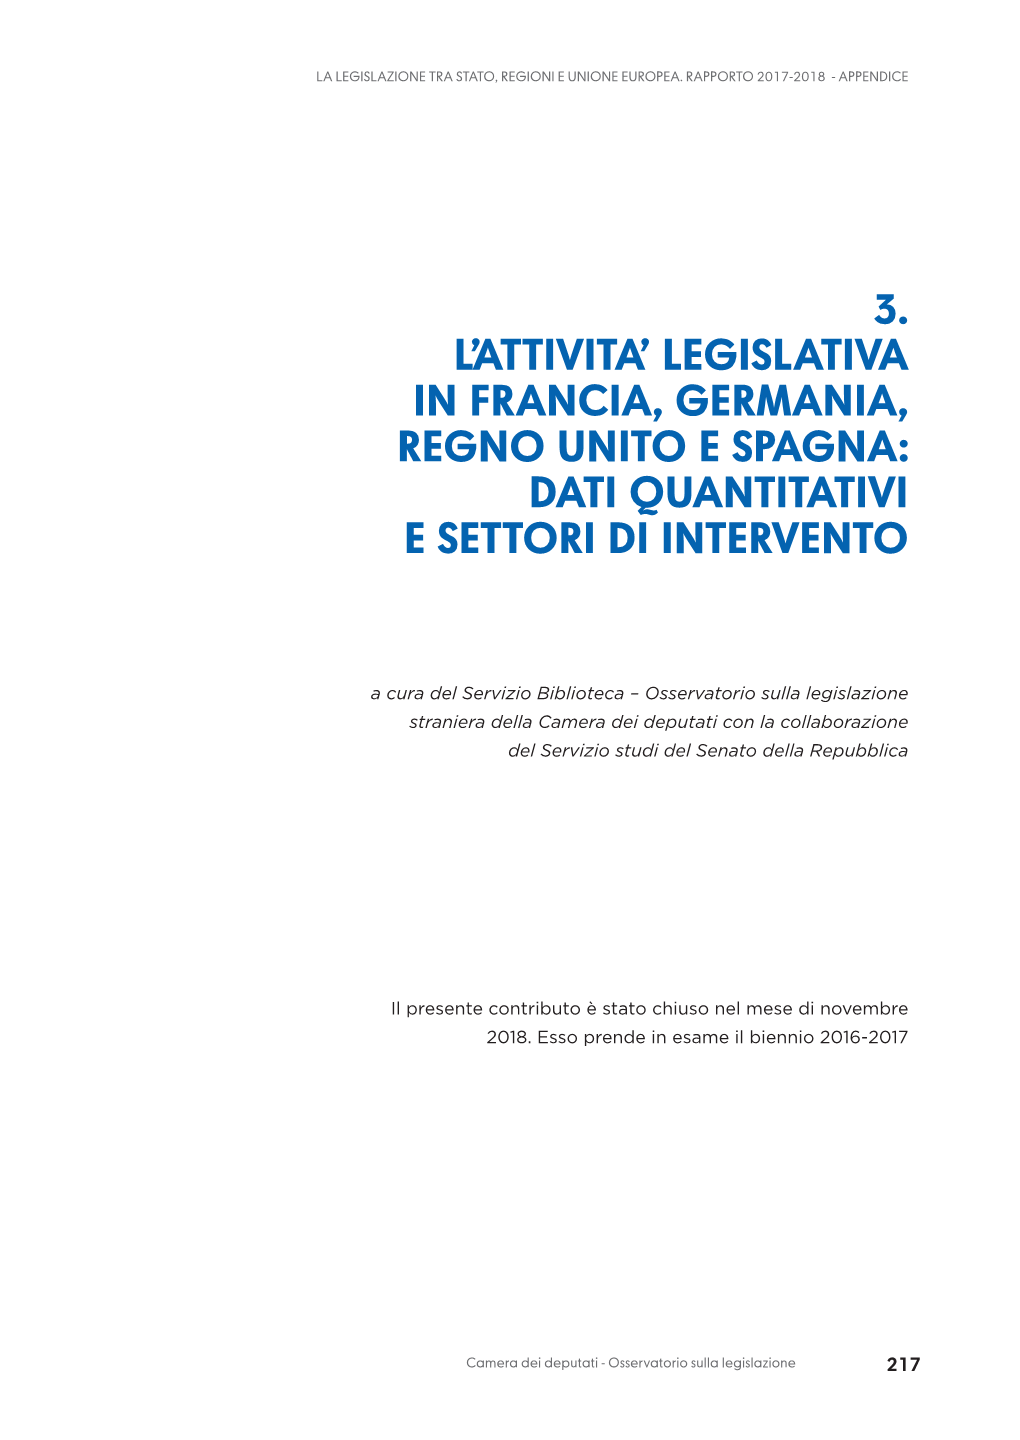 3. L'attivita' Legislativa in Francia, Germania, Regno Unito E Spagna: Dati Quantitativi E Settori Di Intervento